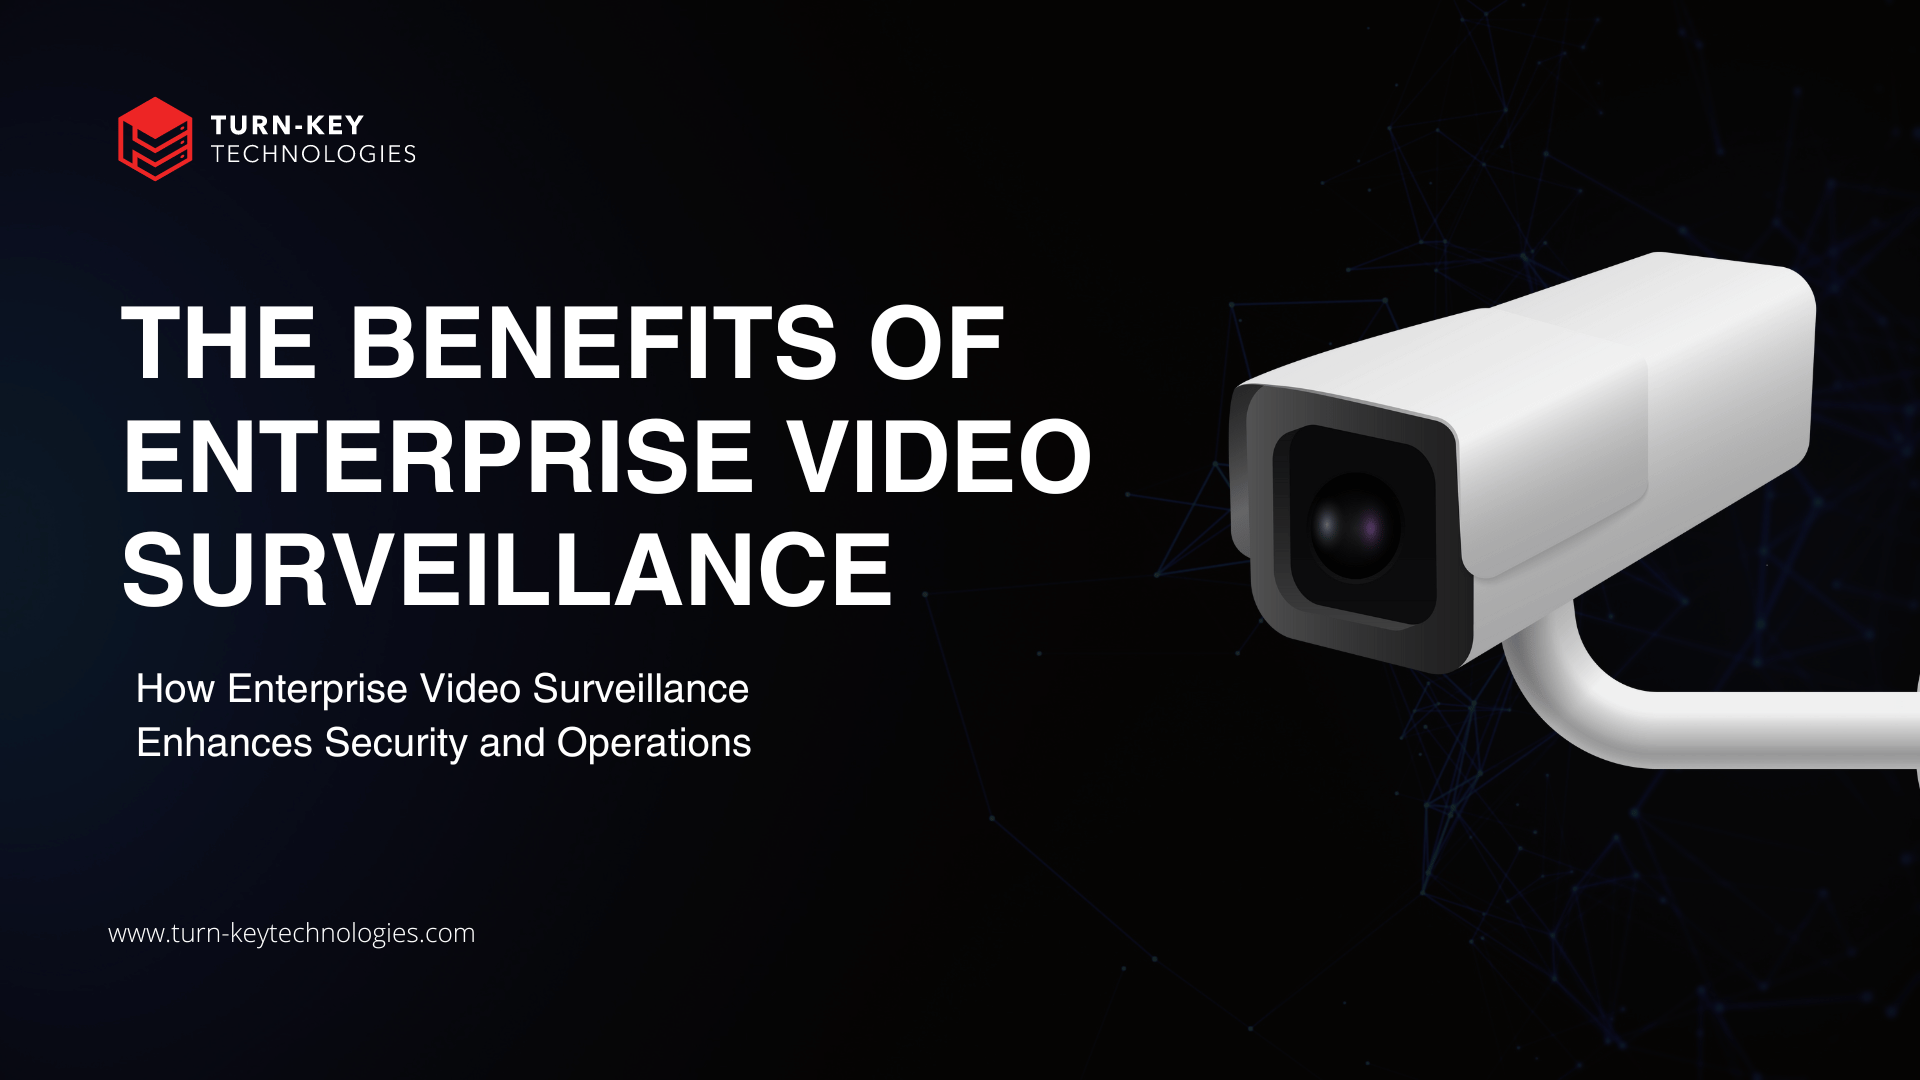 Enterprise Video Surveillance Systems